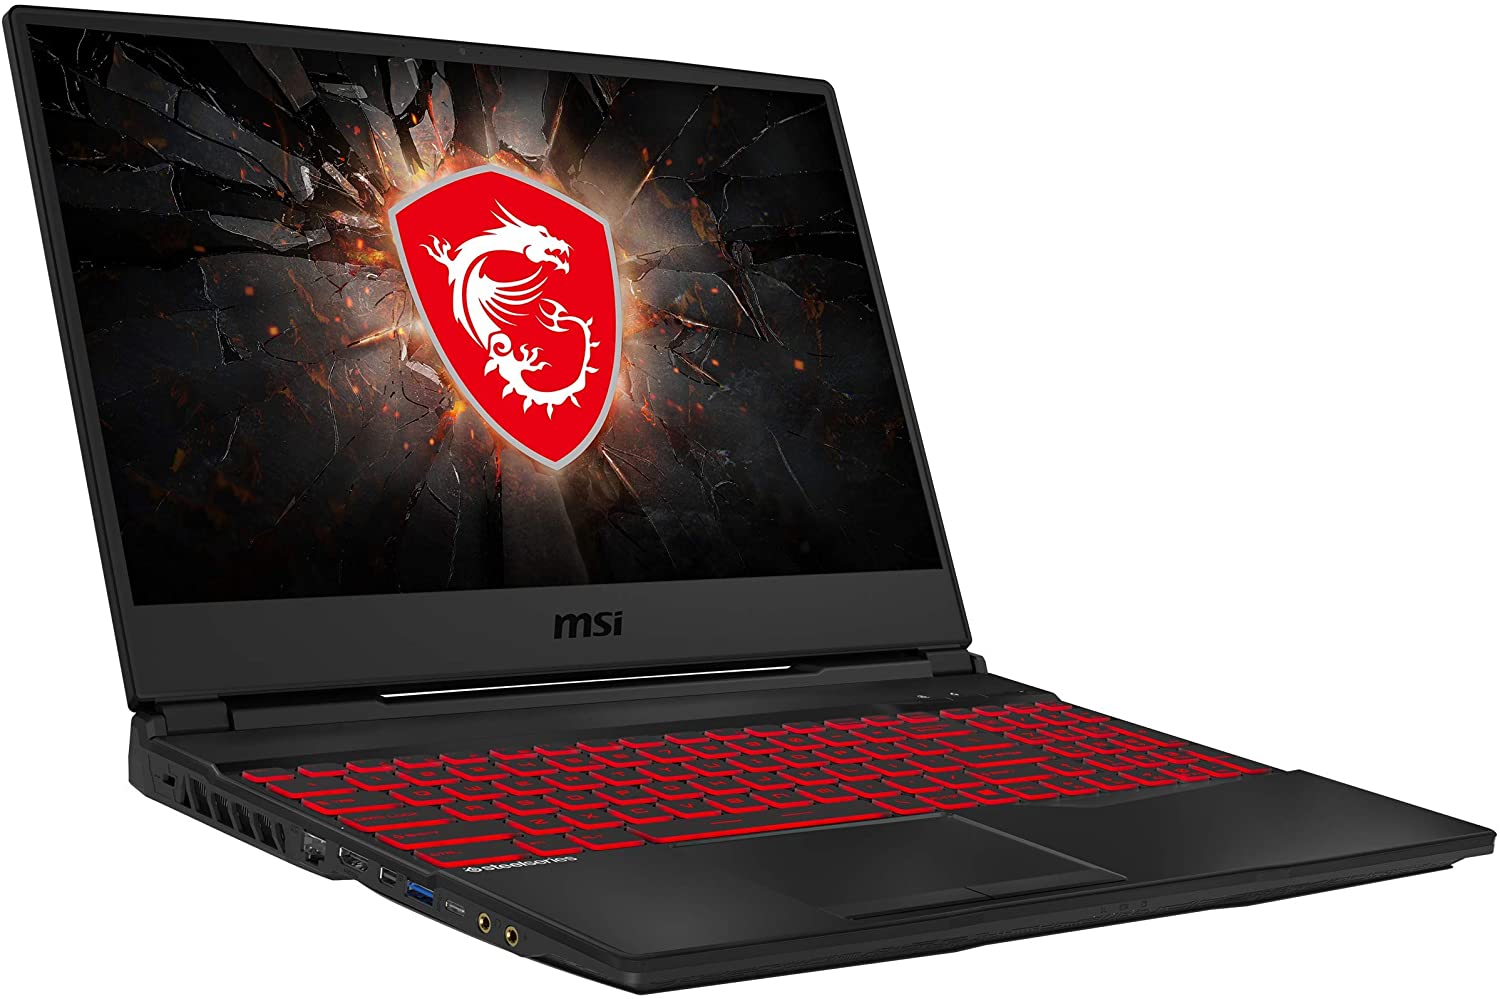 msi gaming laptop with dragon eyes